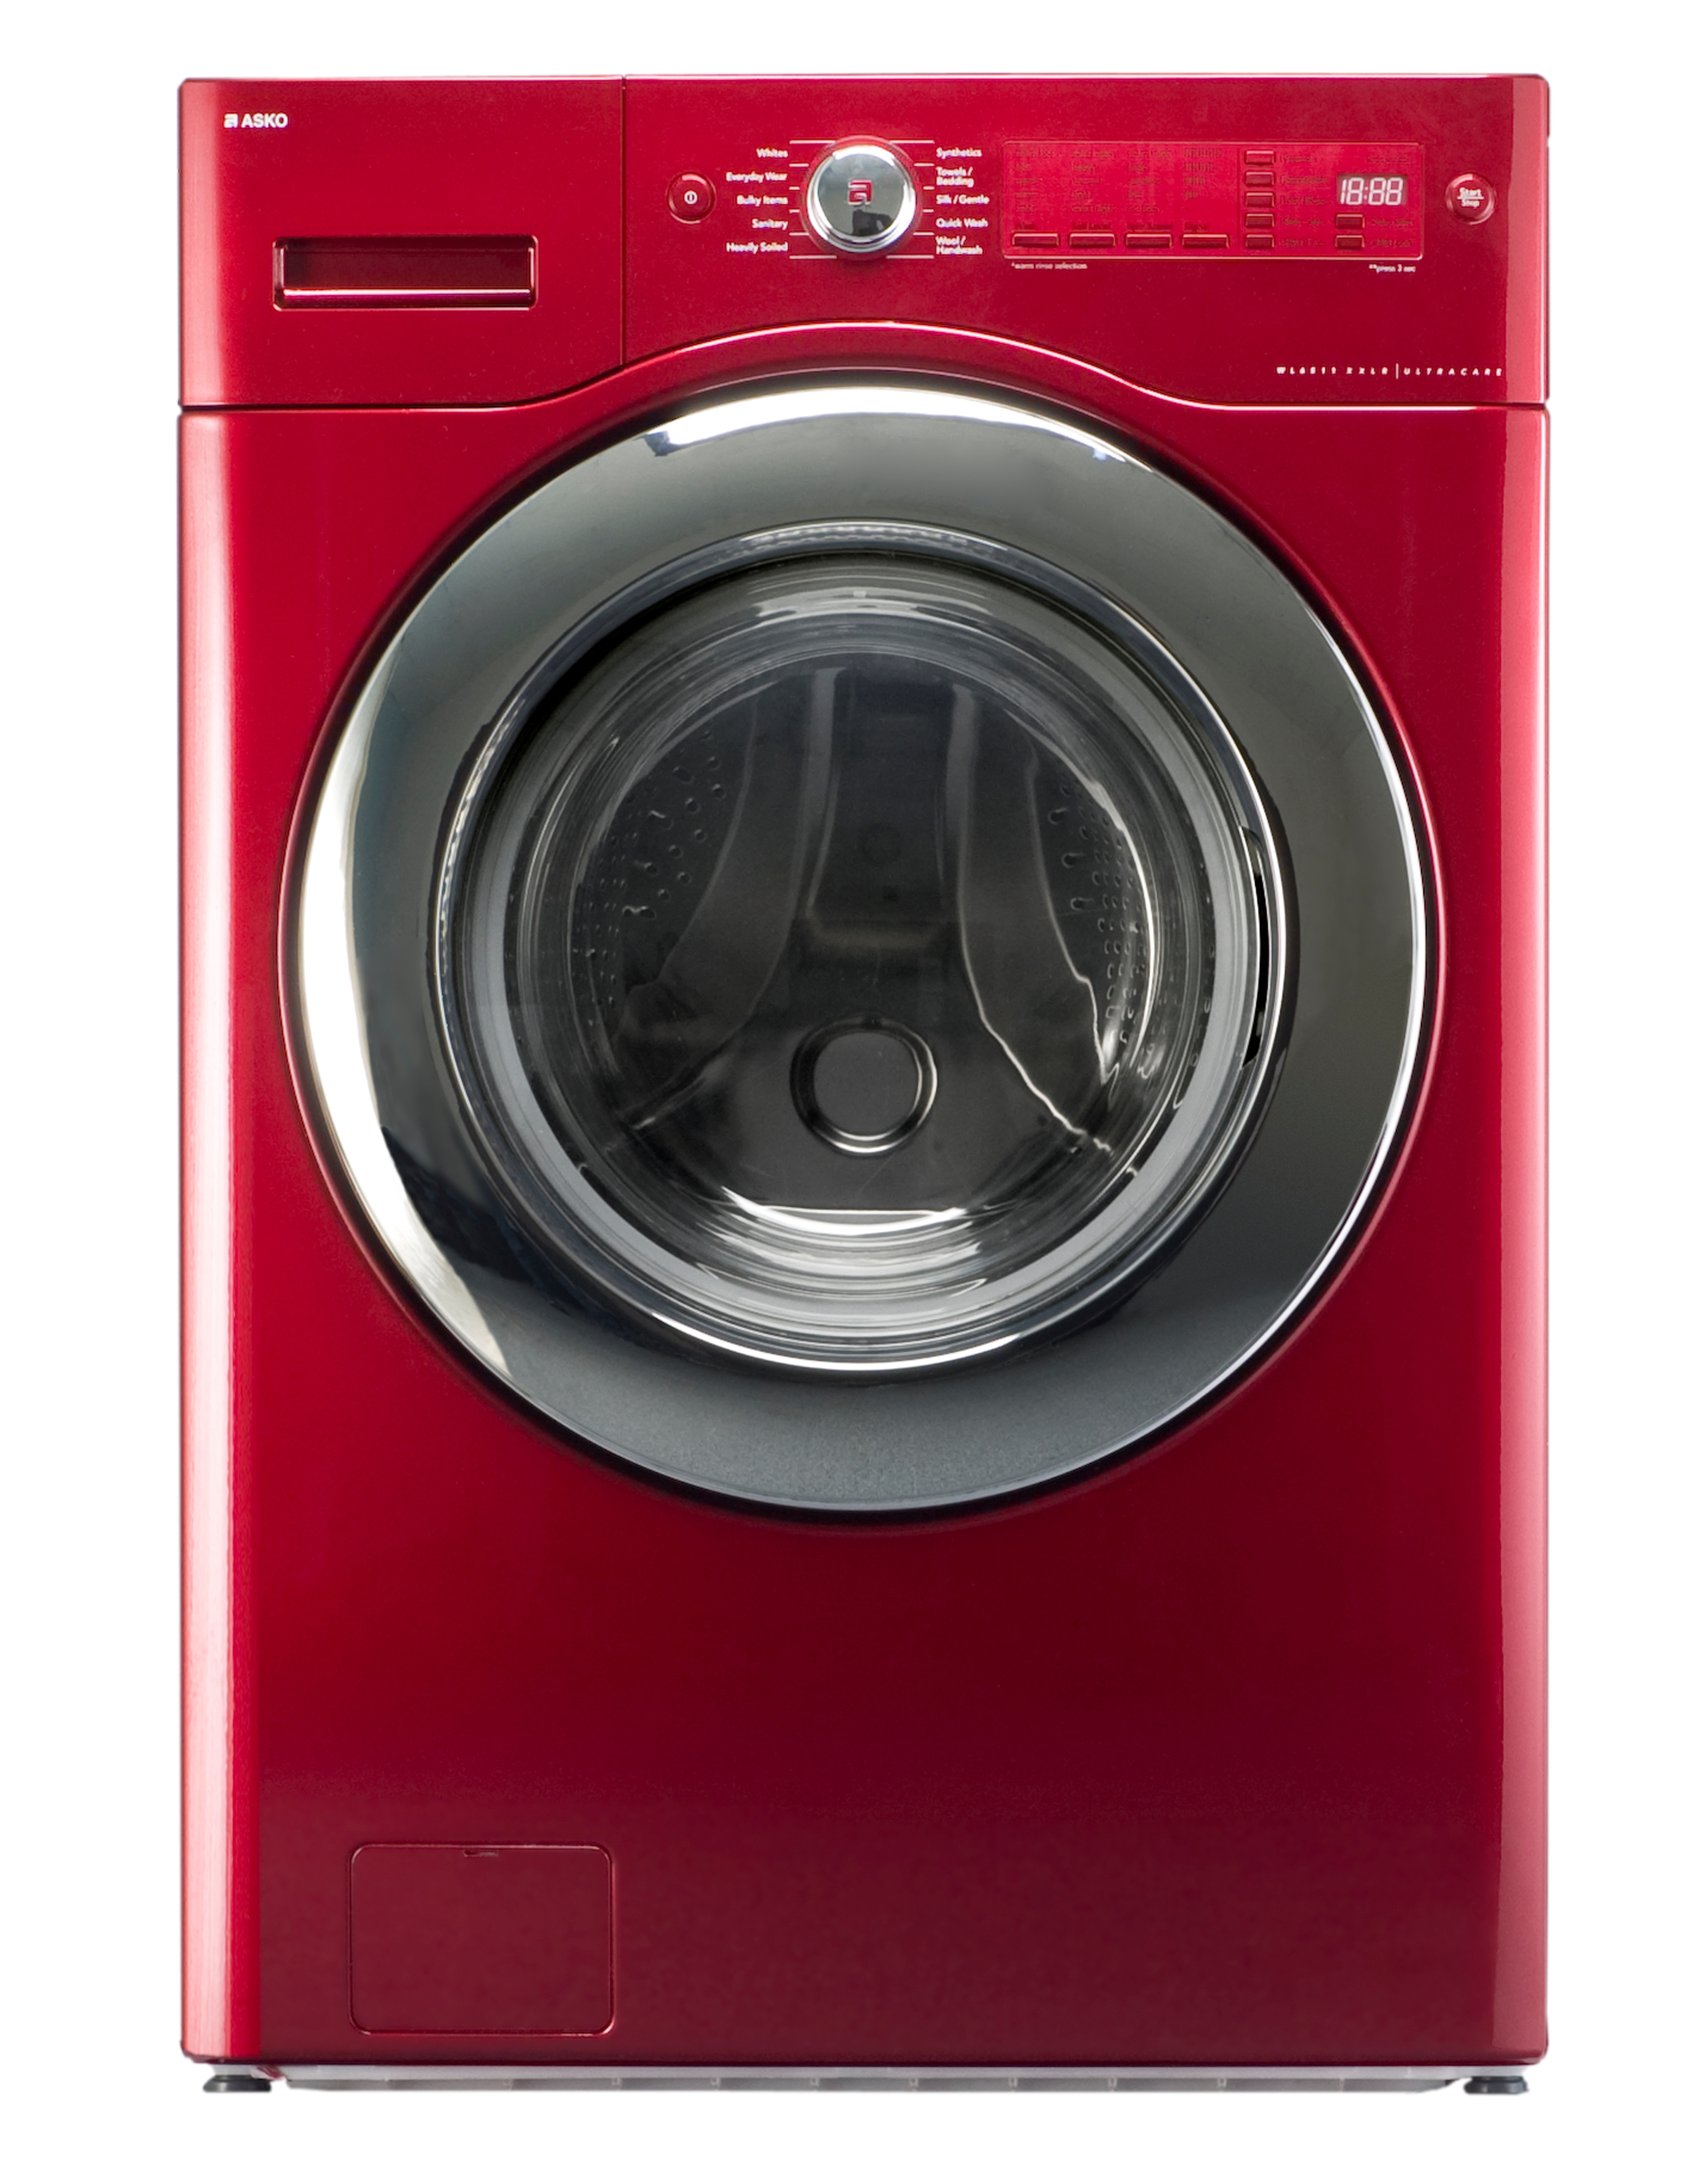 Купить стиральную машину рбт. Asko wl6532. LG стиральная машинка красная dlgx3071r. Стиральная машина lg1437 Red. LG стиральная машина красная.